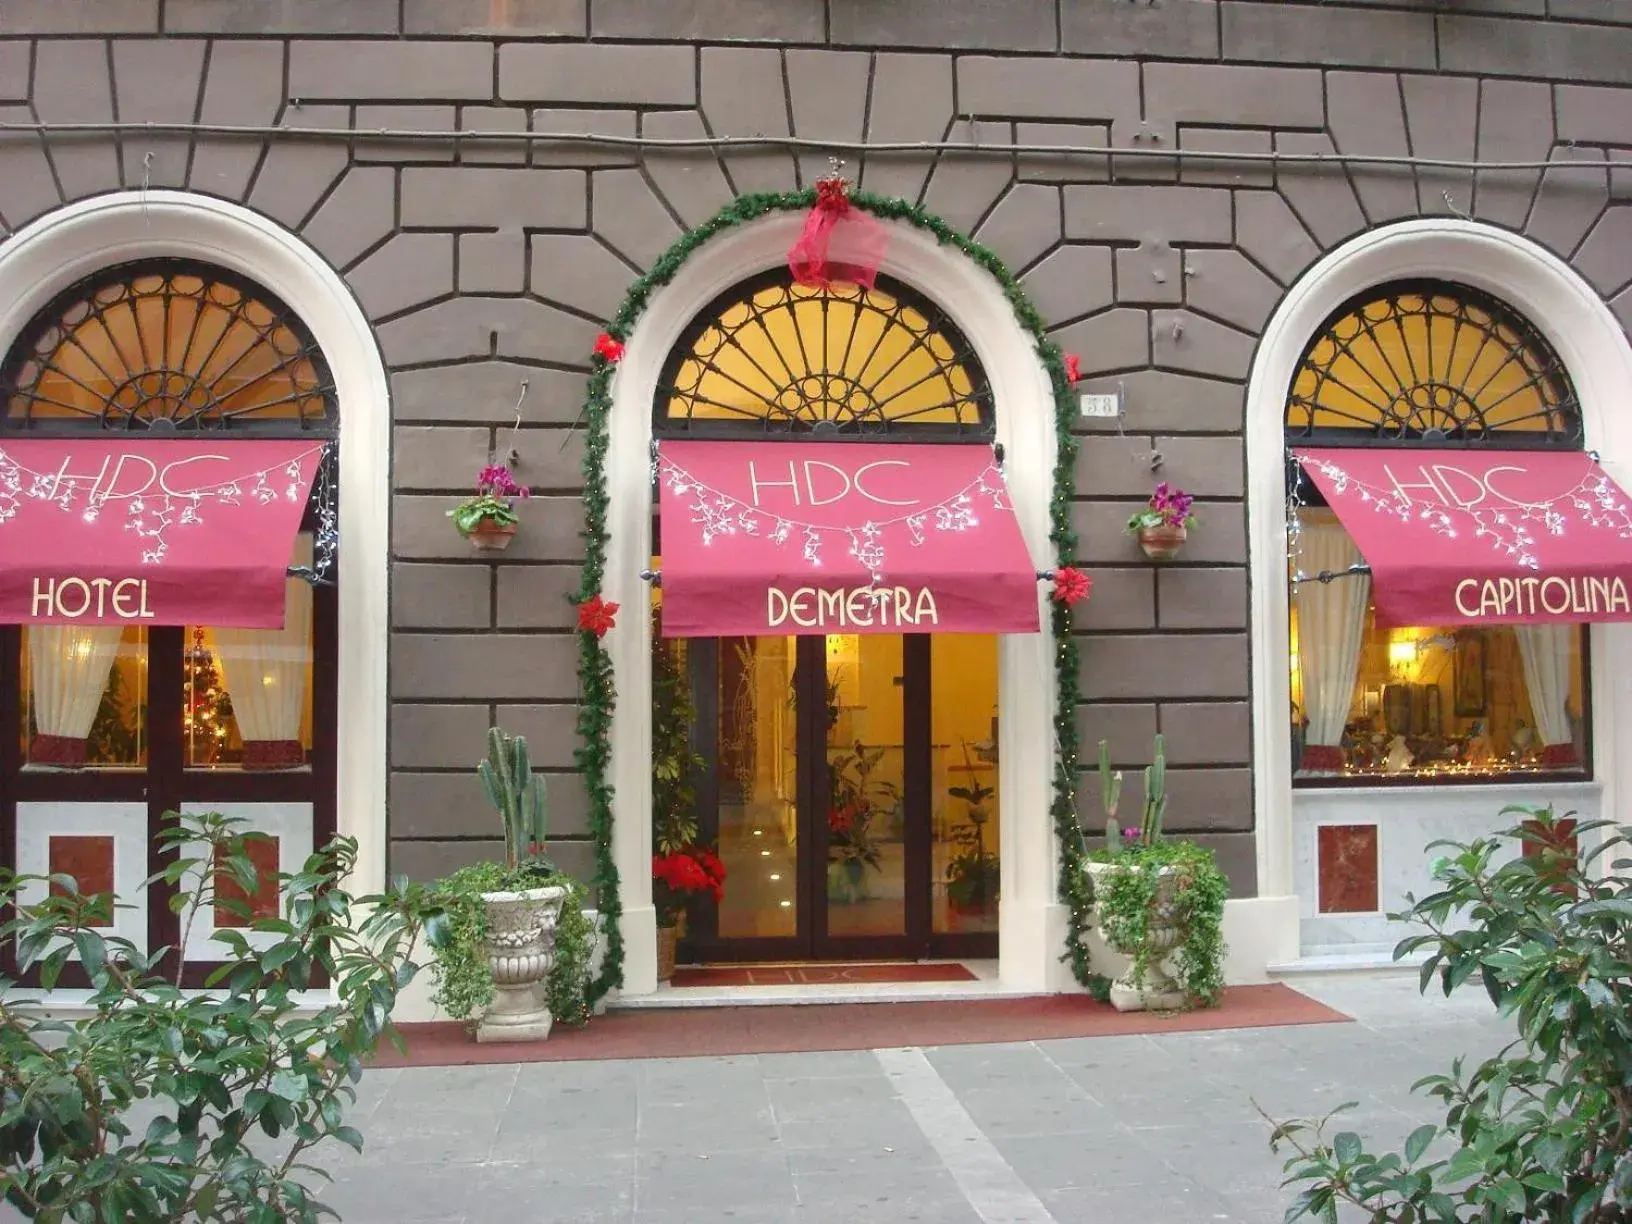 Facade/entrance in Hotel Demetra Capitolina